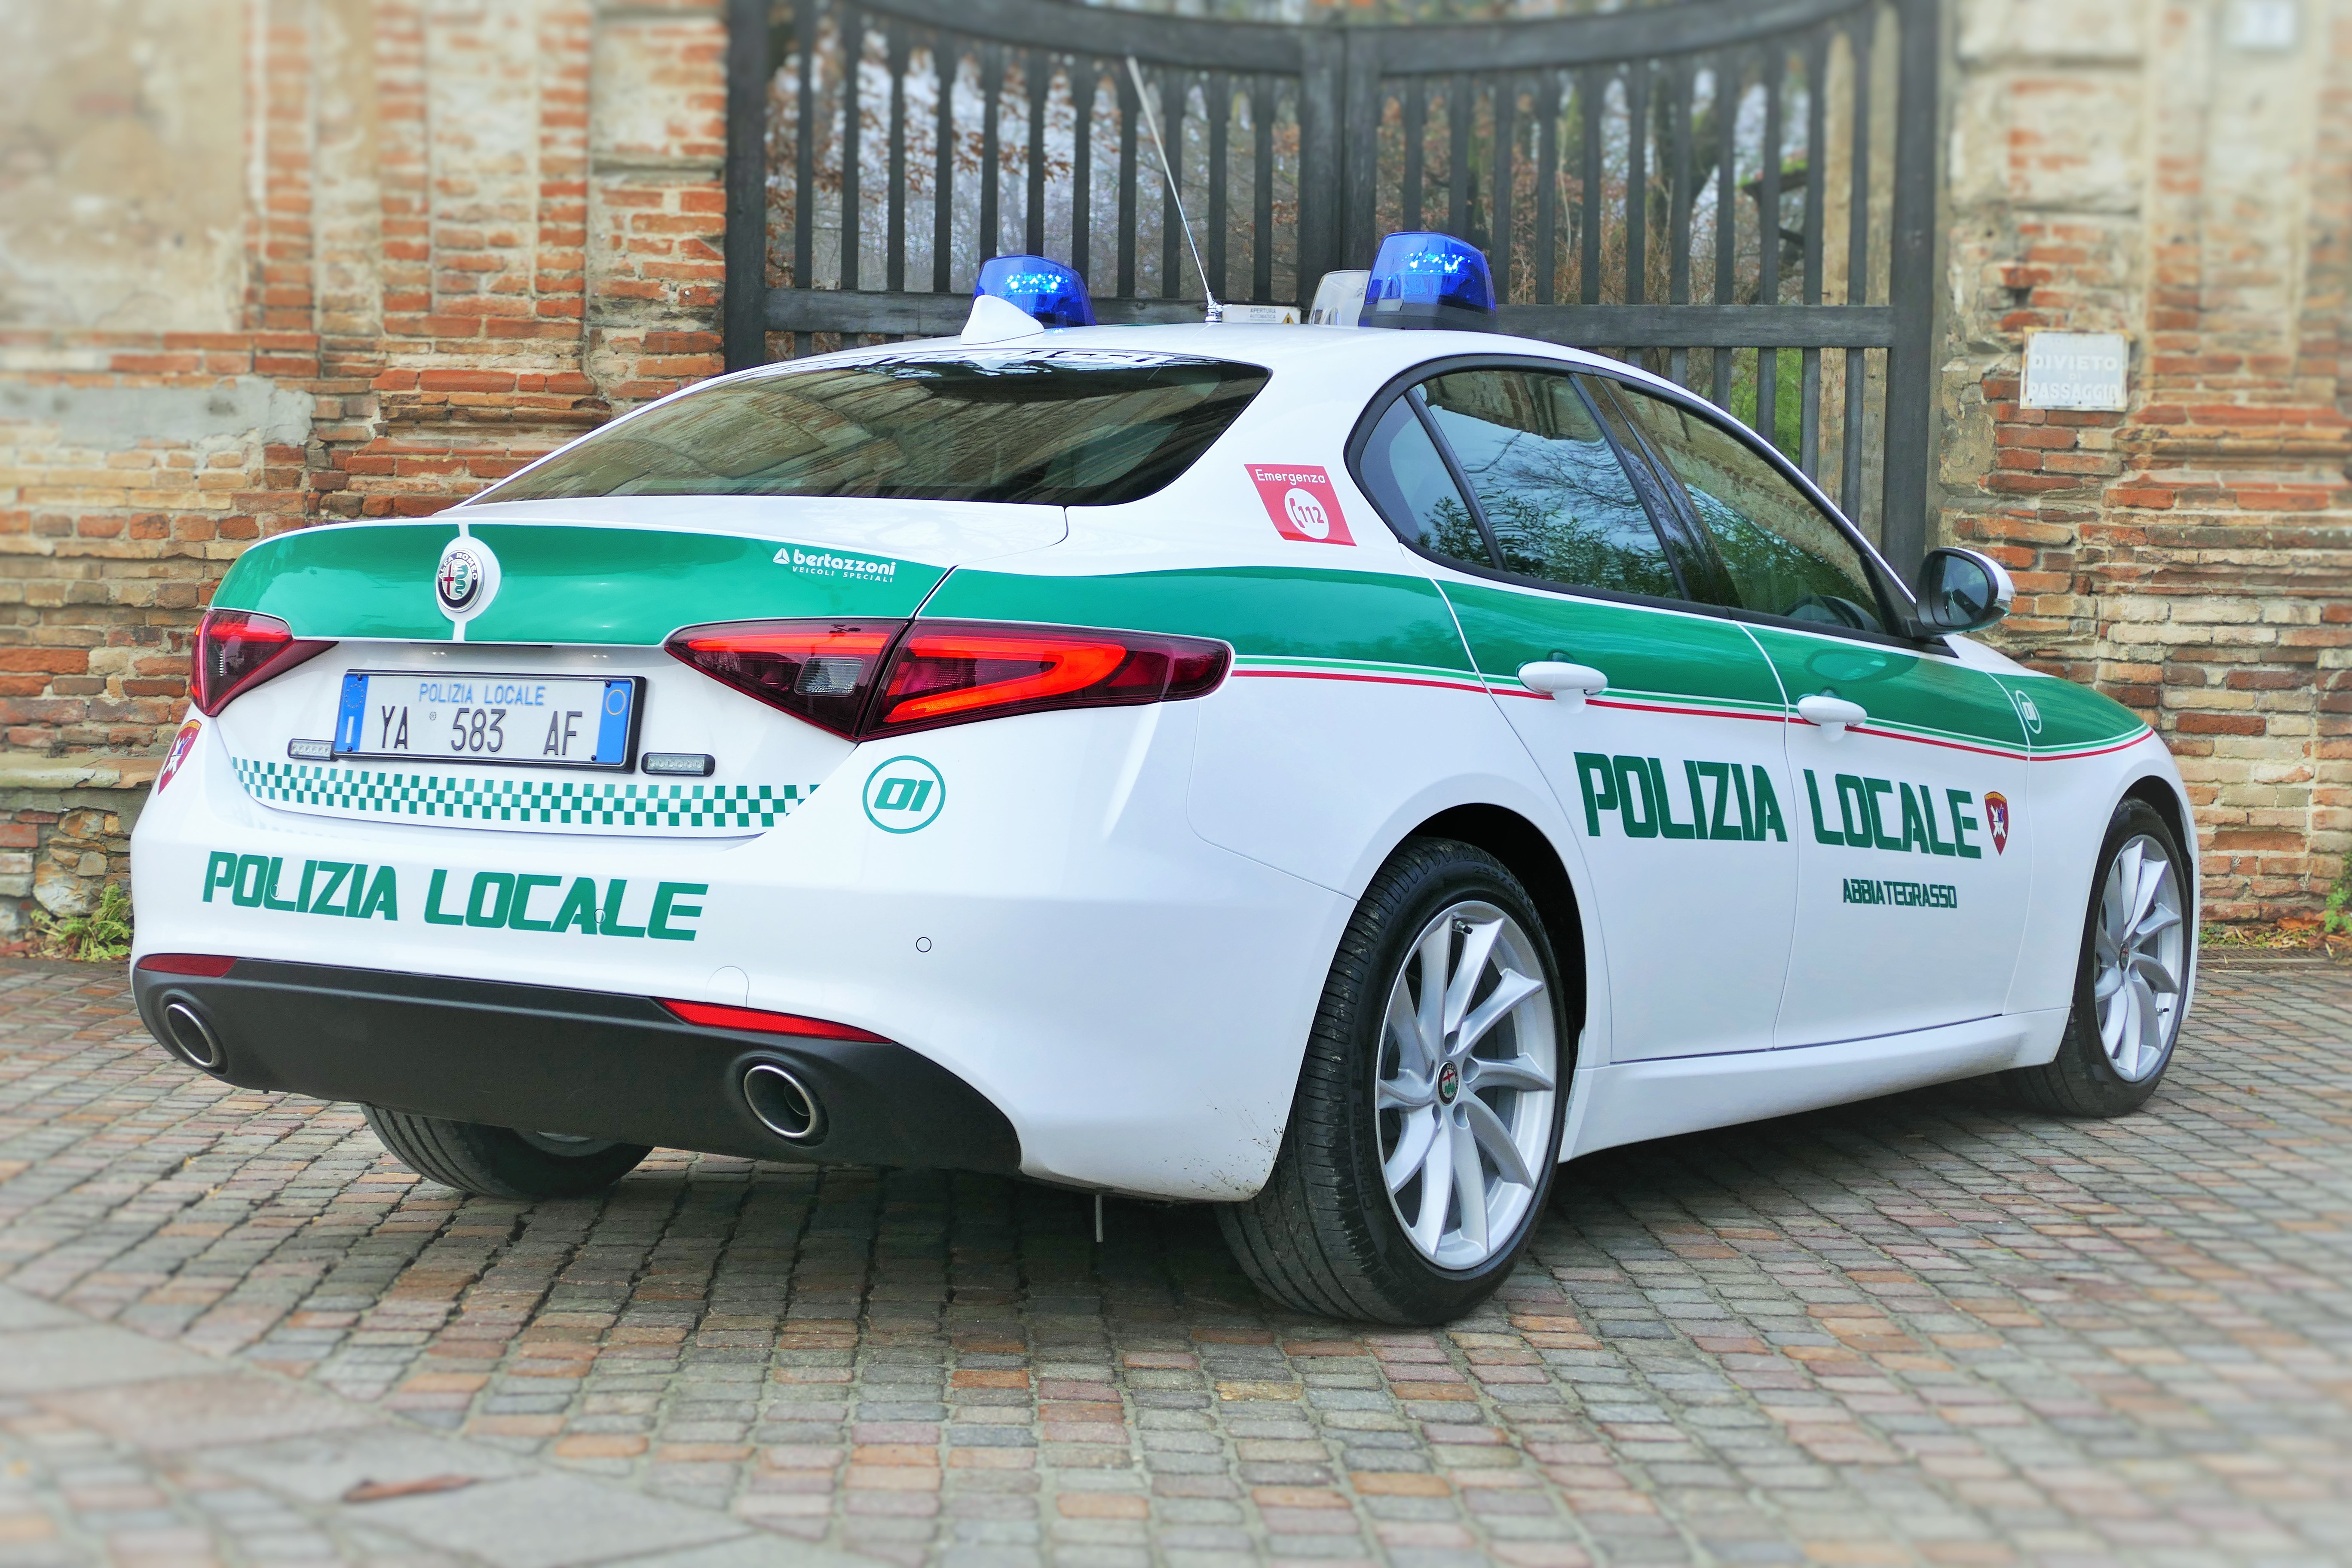 Polizia Locale reparto trasporto organi: Abbiategrasso crea il primo servizio in Italia su Alfa Romeo Giulia | Emergency Live 19